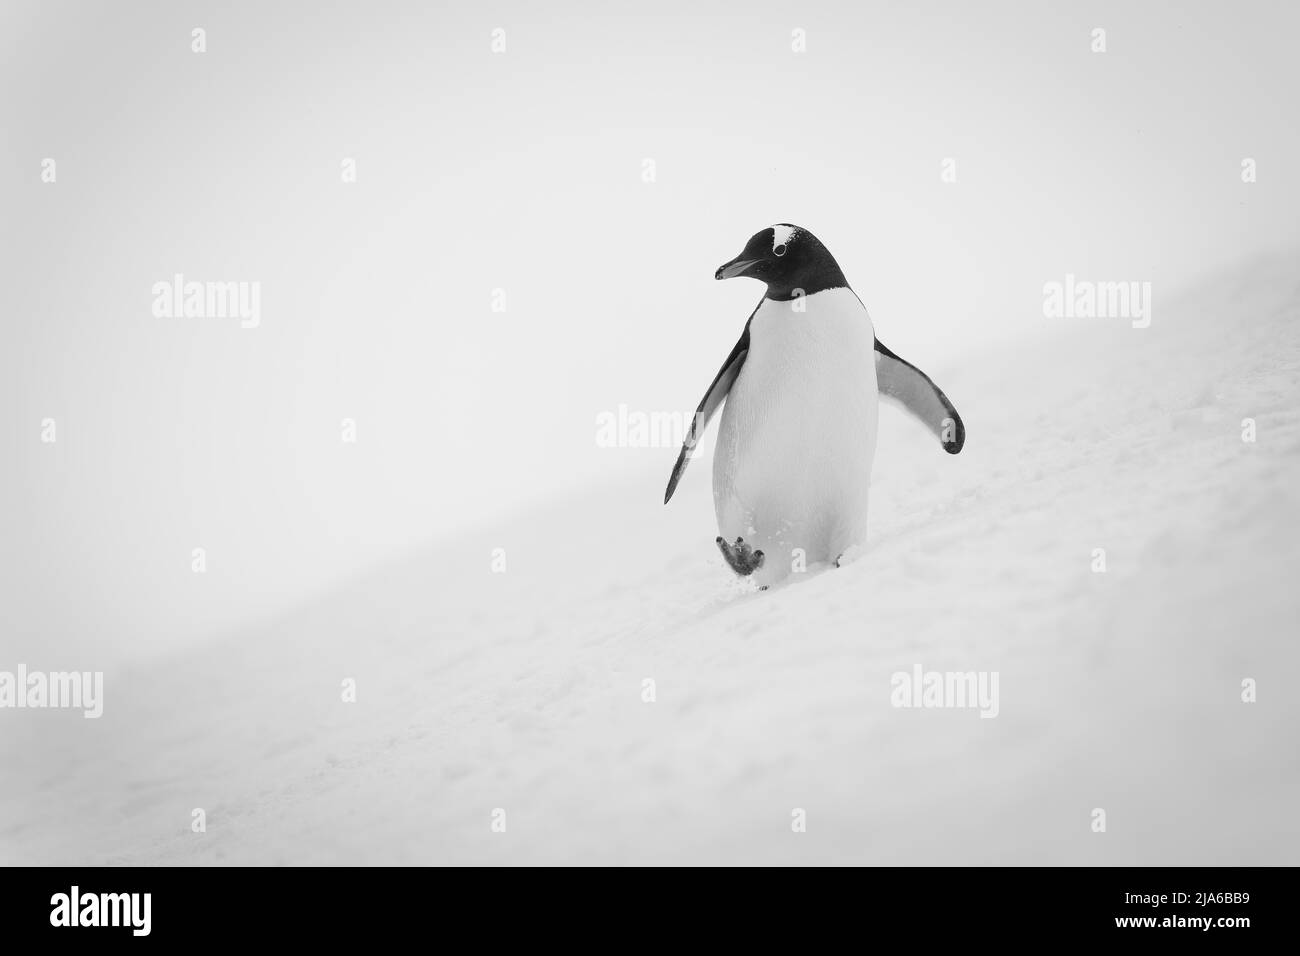 Ein sanftmütiger Pinguin watschelt über einen verschneiten Hang, hält seine Flossen aus dem Gleichgewicht und hebt seinen rechten Fuß. Es hat eine weiße Brust, schwarz und weiß Stockfoto